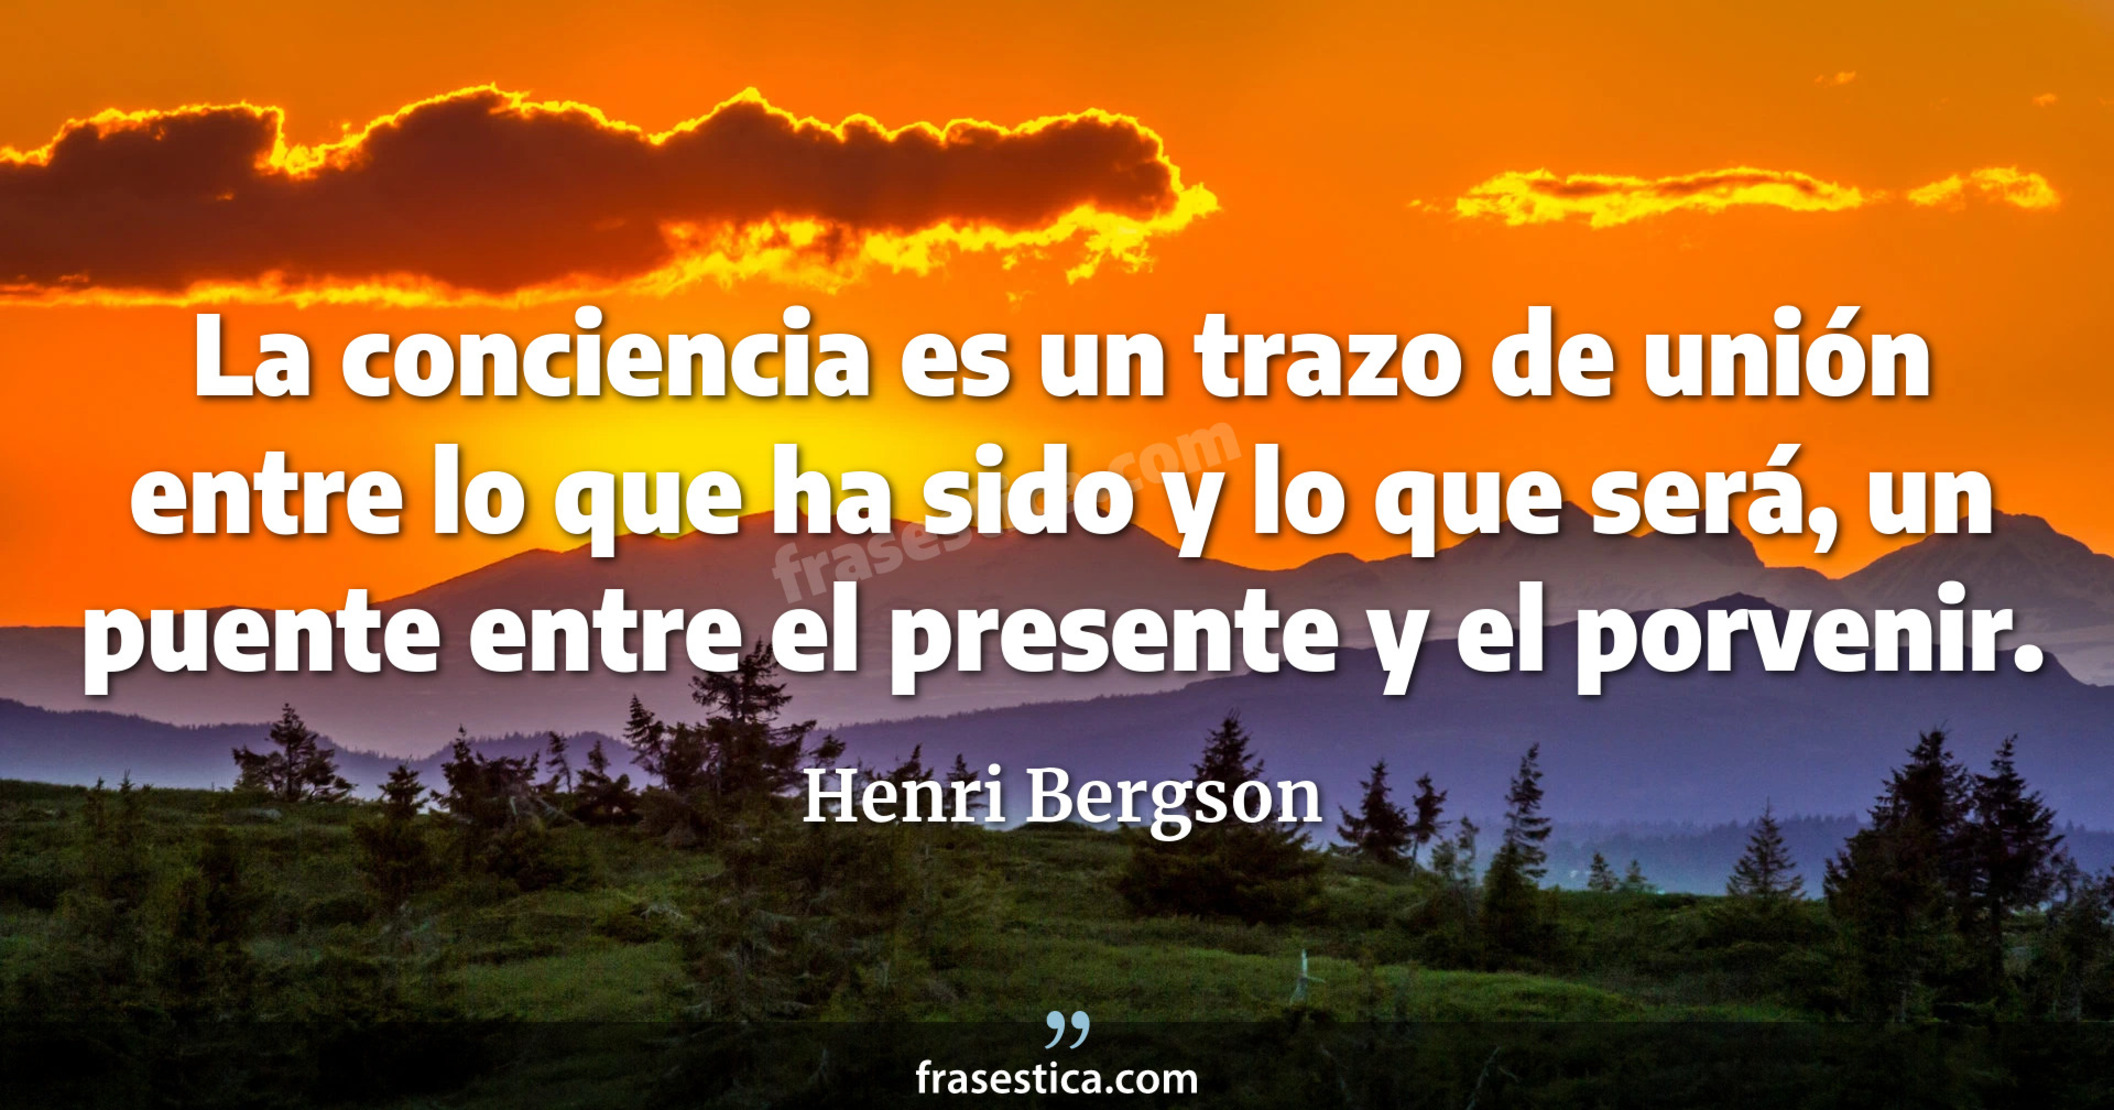 La conciencia es un trazo de unión entre lo que ha sido y lo que será, un puente entre el presente y el porvenir. - Henri Bergson